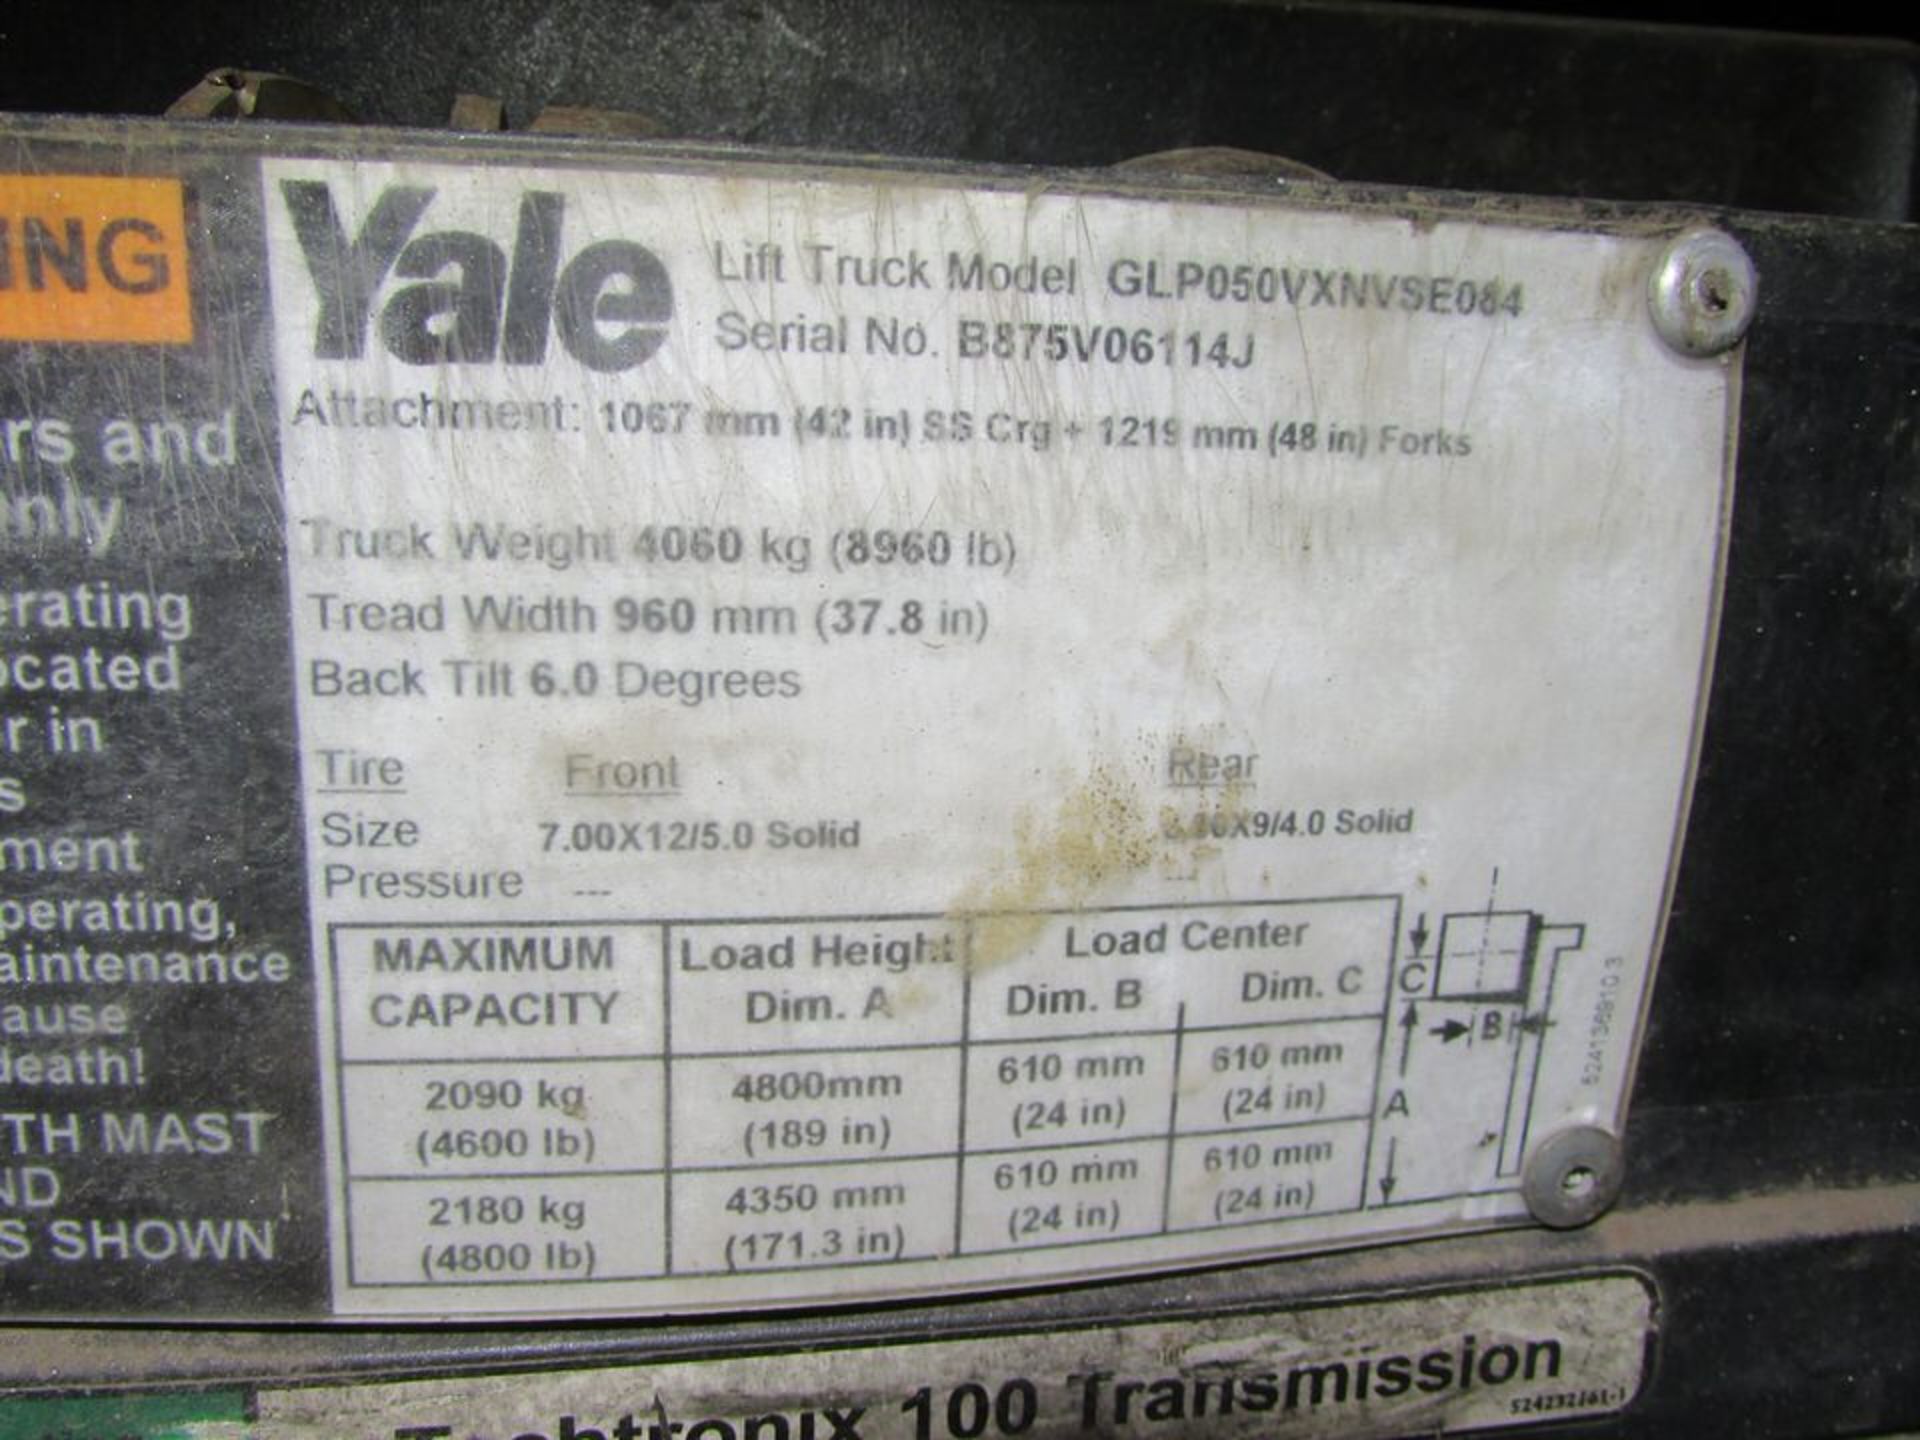 Yale GLP050VXNVSE084 4800-Lb LP Fork Truck, 48" Forks, 189" Mast, Side Shift, Solid Rubber Tires, - Image 10 of 10